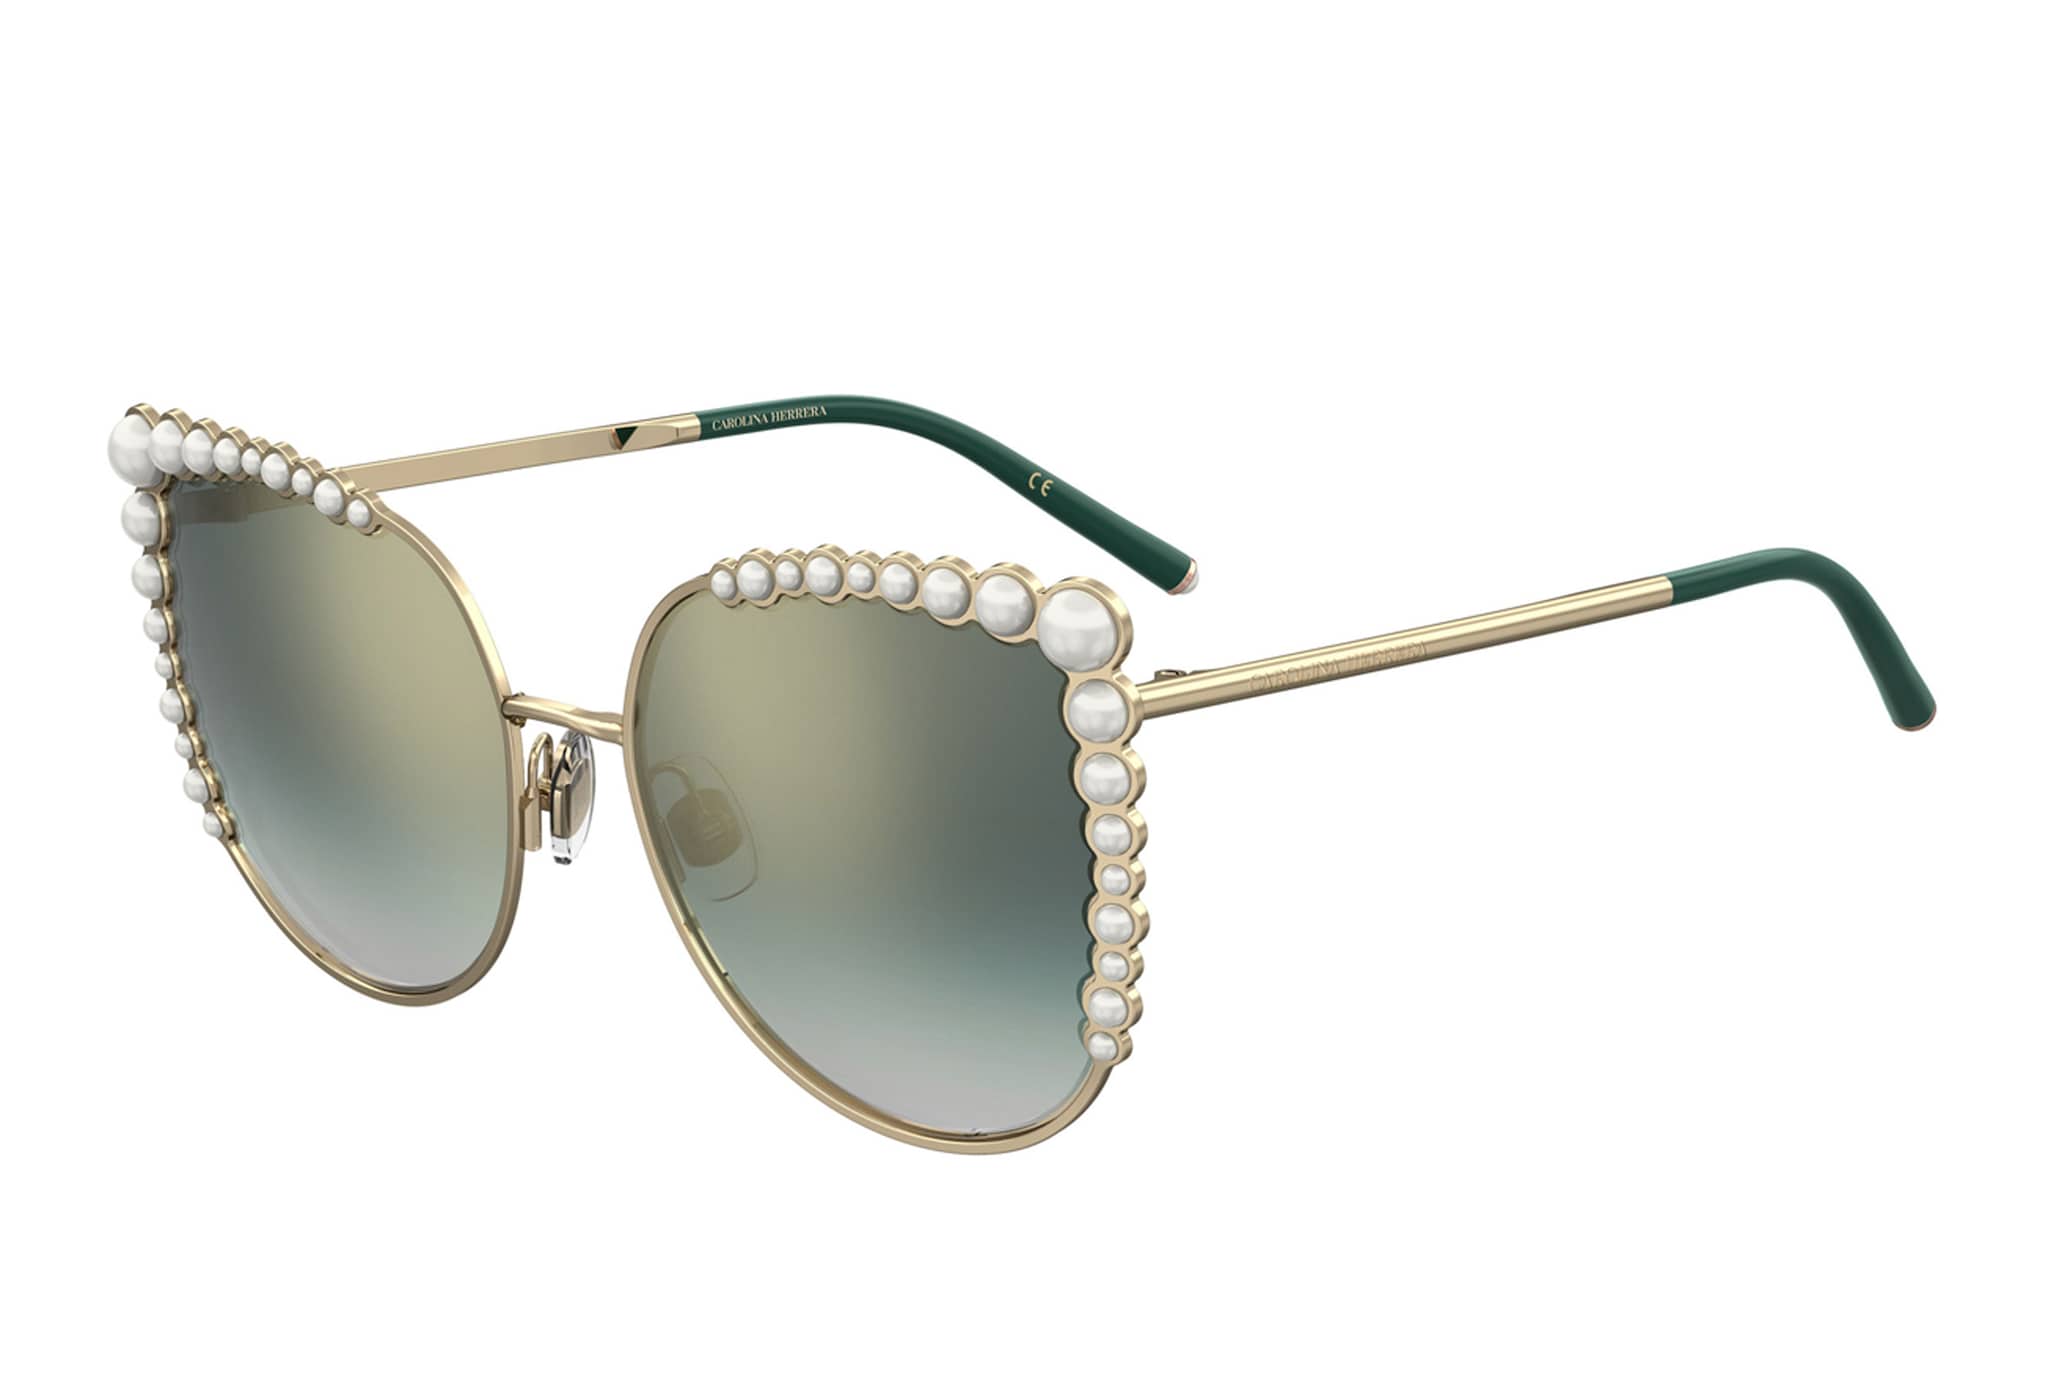 Carolina Herrera Eyewear. Occhiali da sole con montatura in metallo decorata da perle degradé.